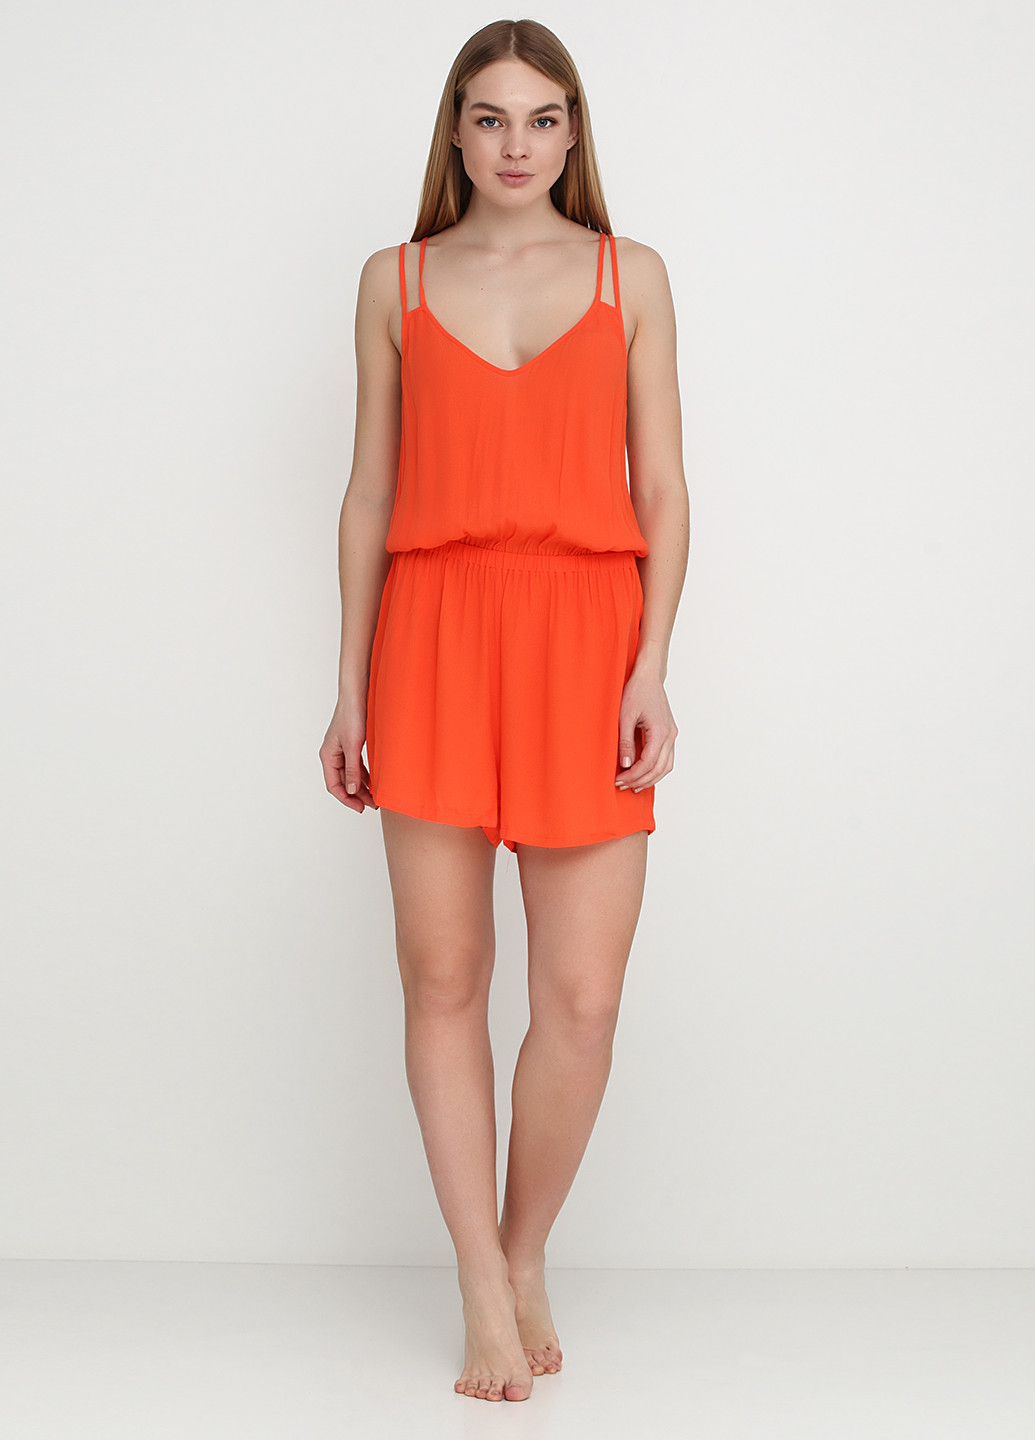 Комбинезон Women'secret комбинезон-шорты однотонный оранжевый пляжный